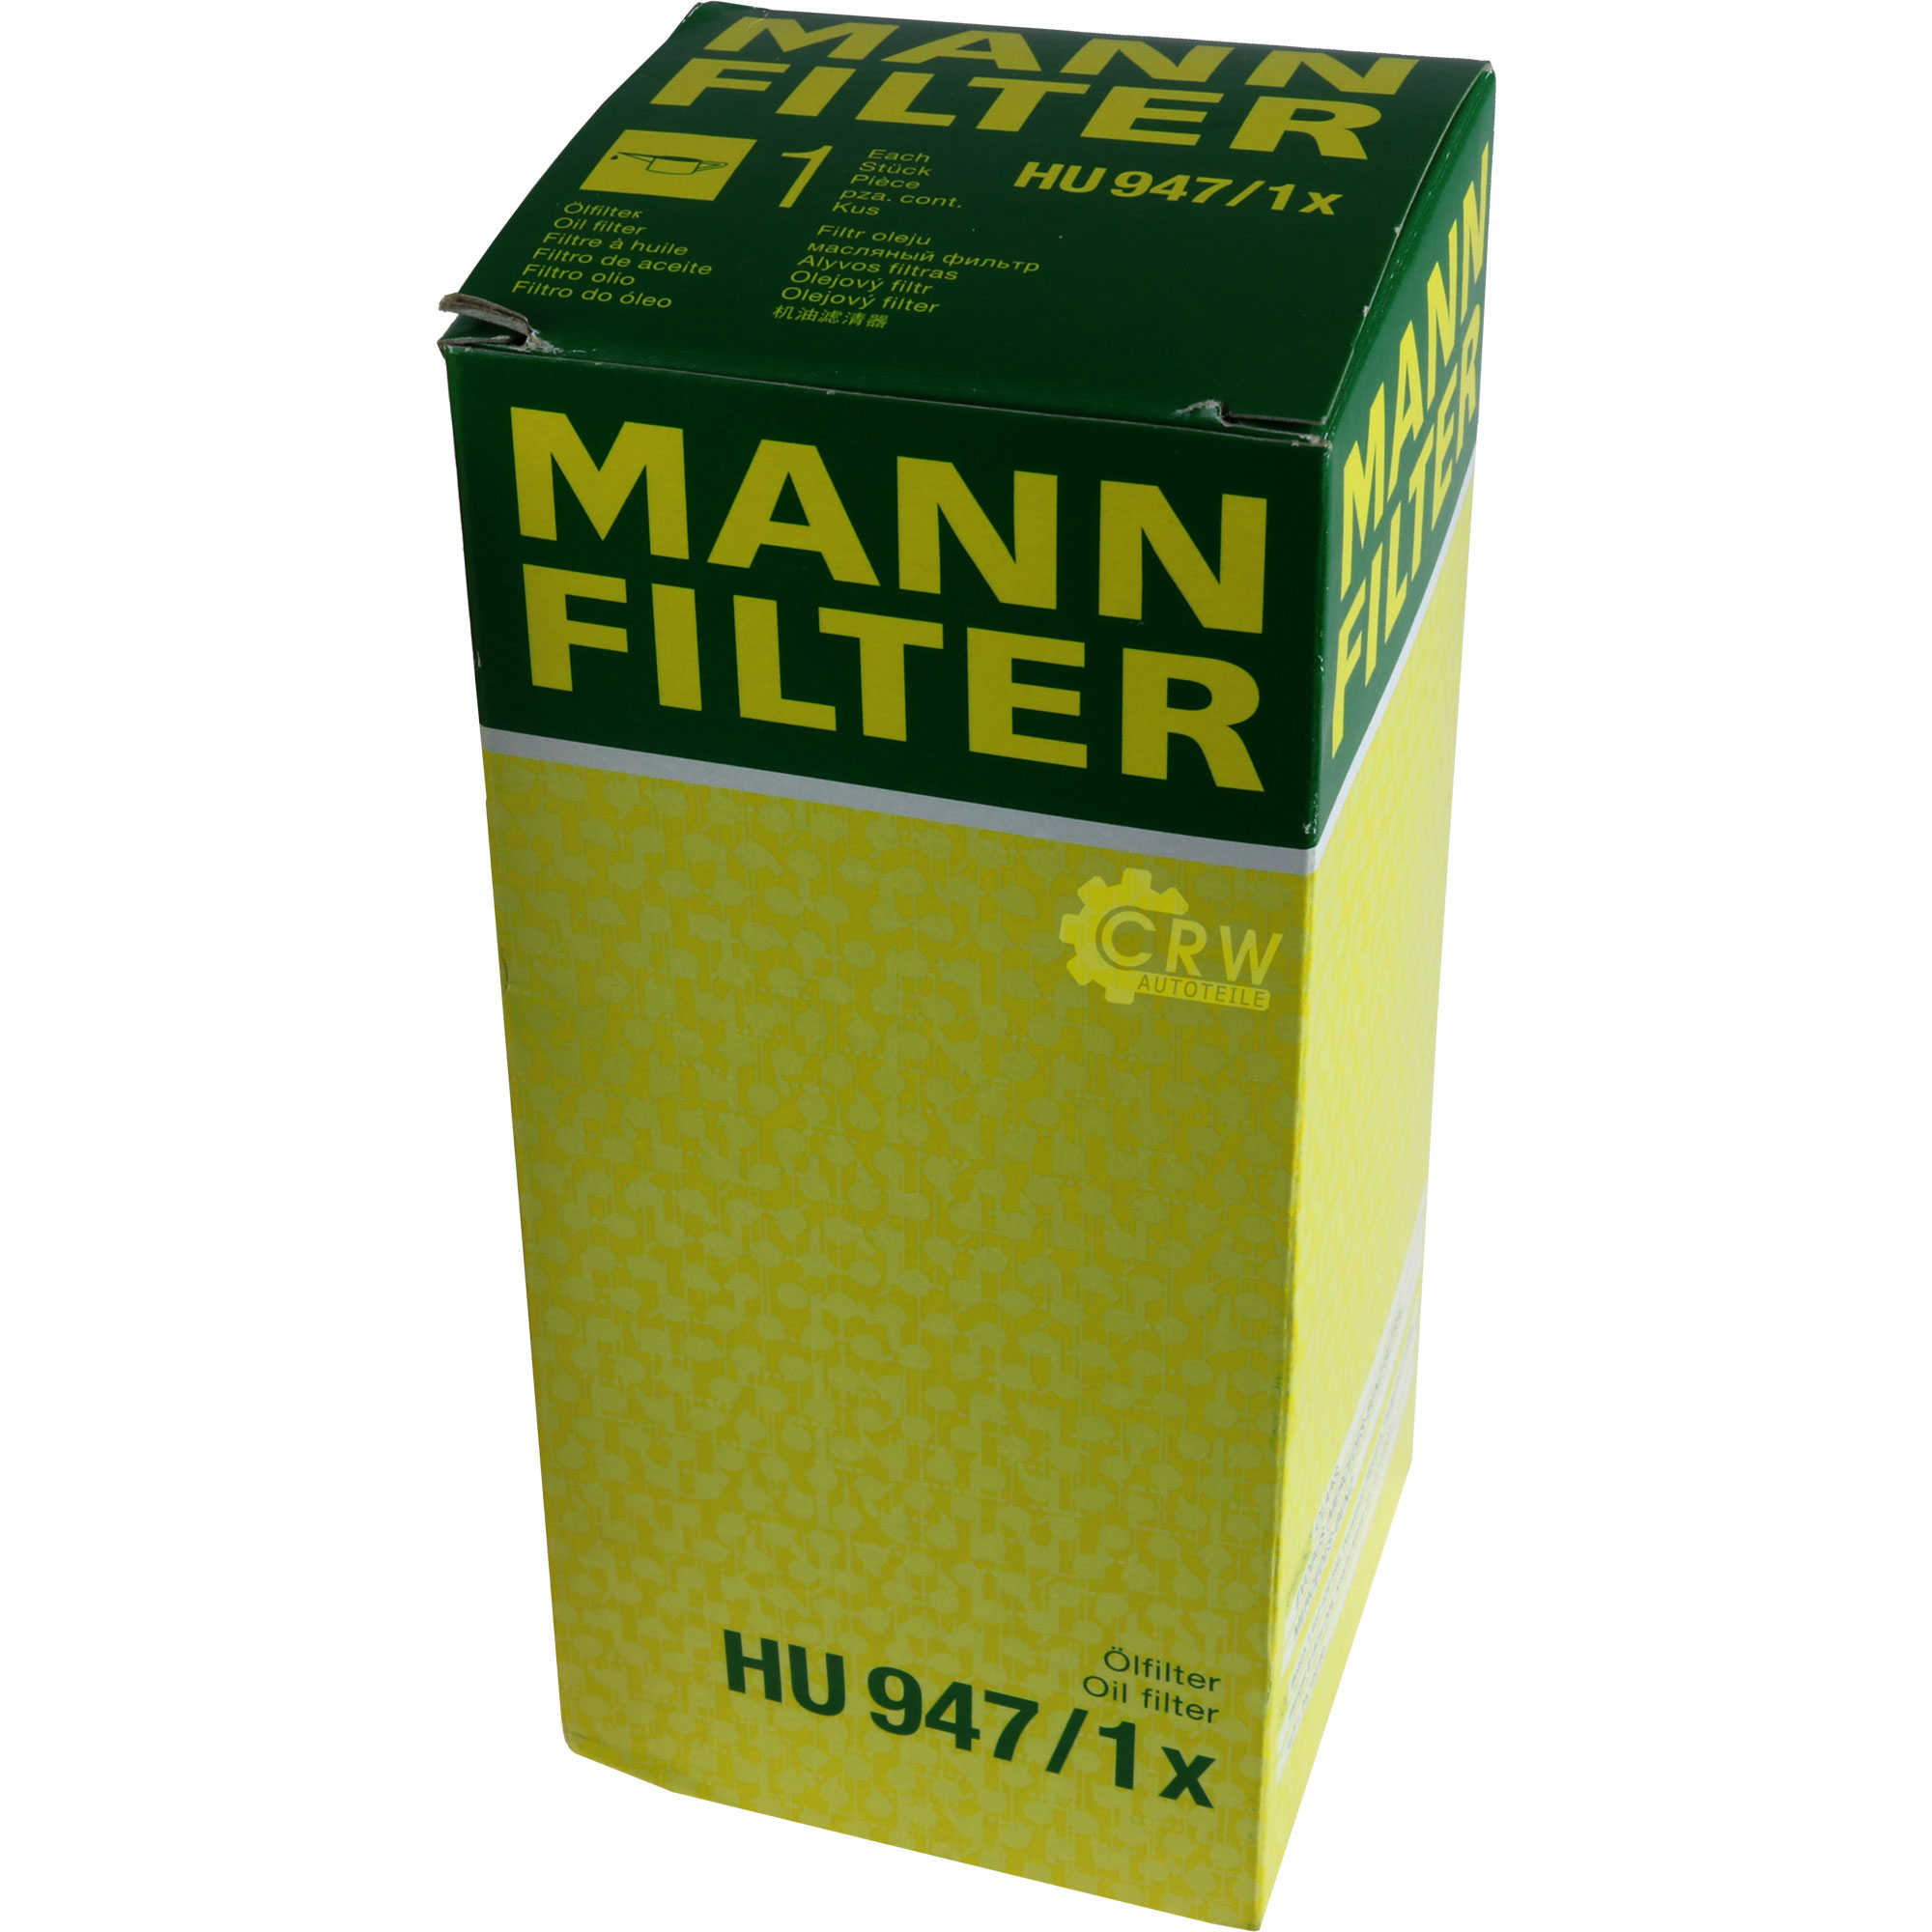 MANN-FILTER Ölfilter Oelfilter HU 947/1 x Oil Filter